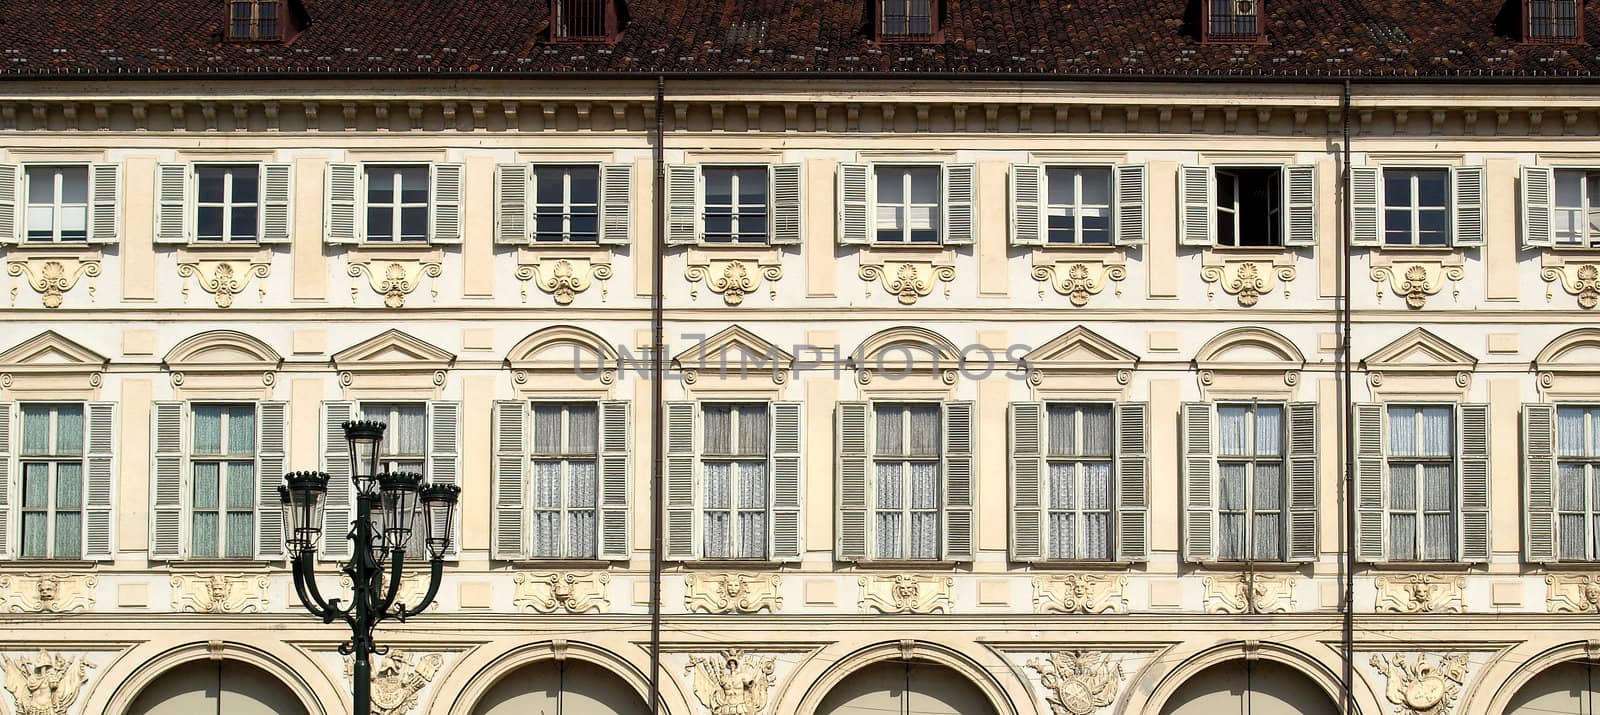 Turin facade by claudiodivizia